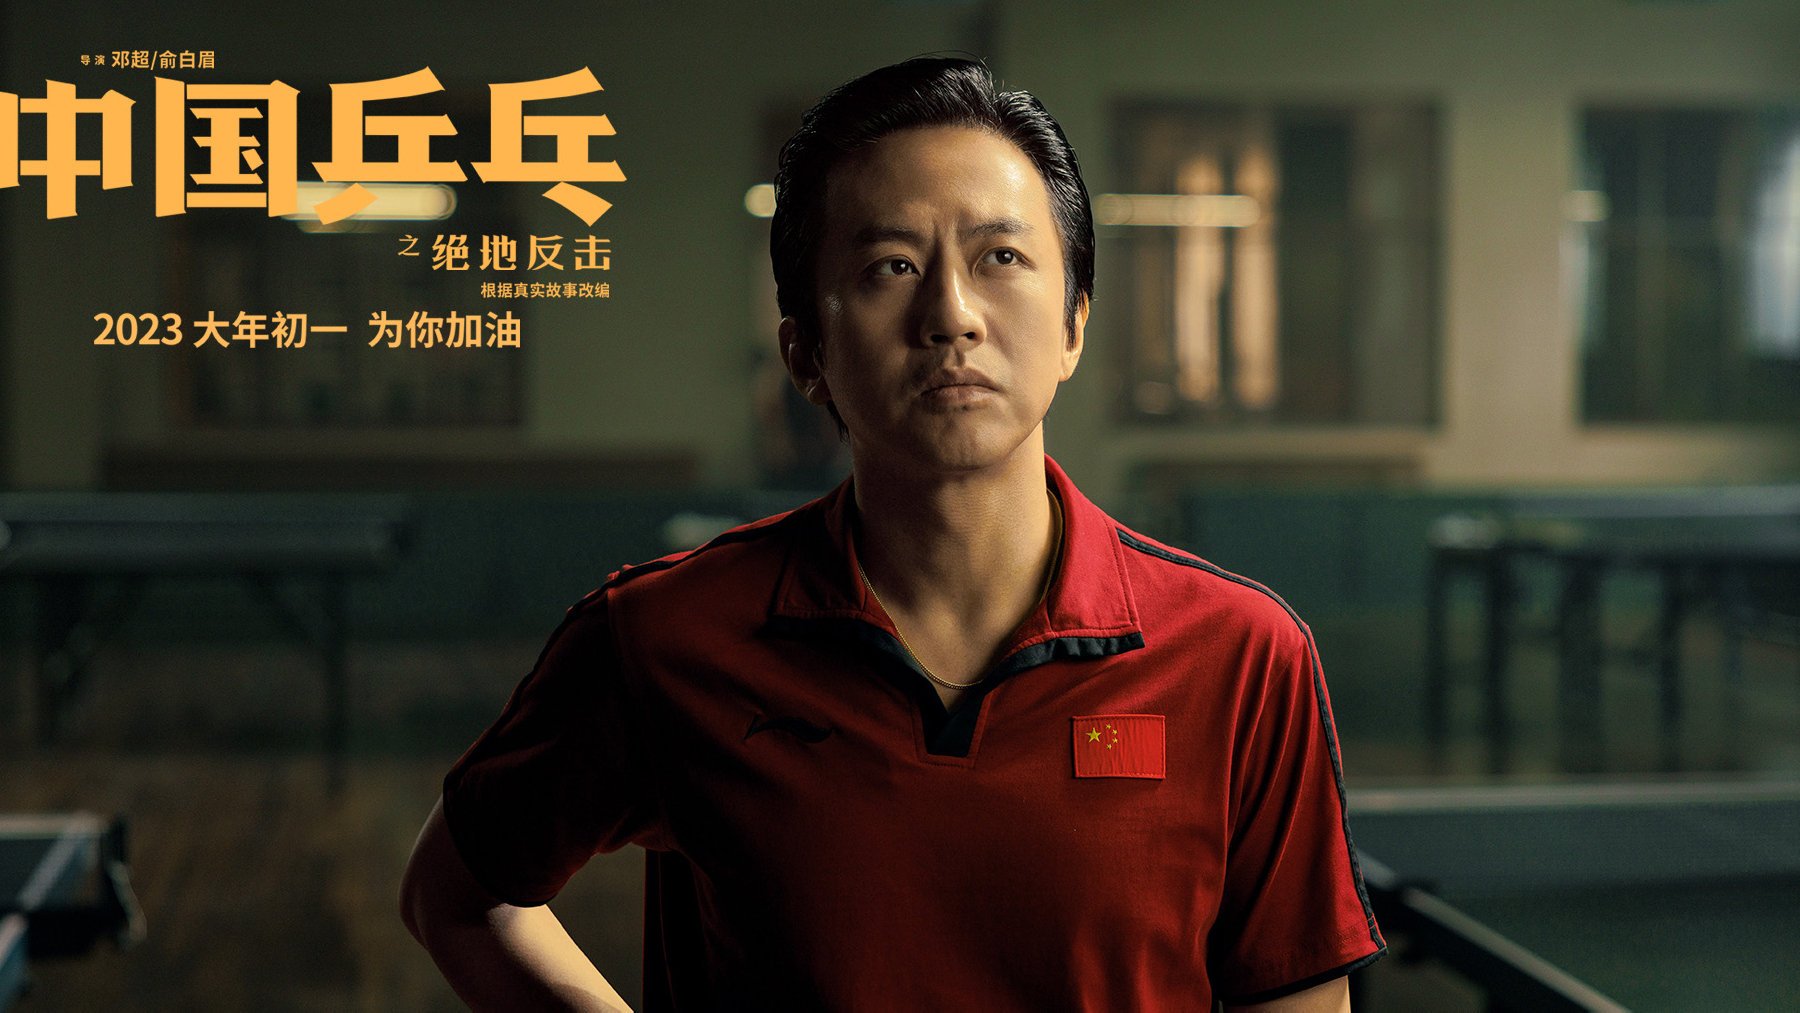 电影《中国乒乓之绝地反击》释出邓超练球花絮